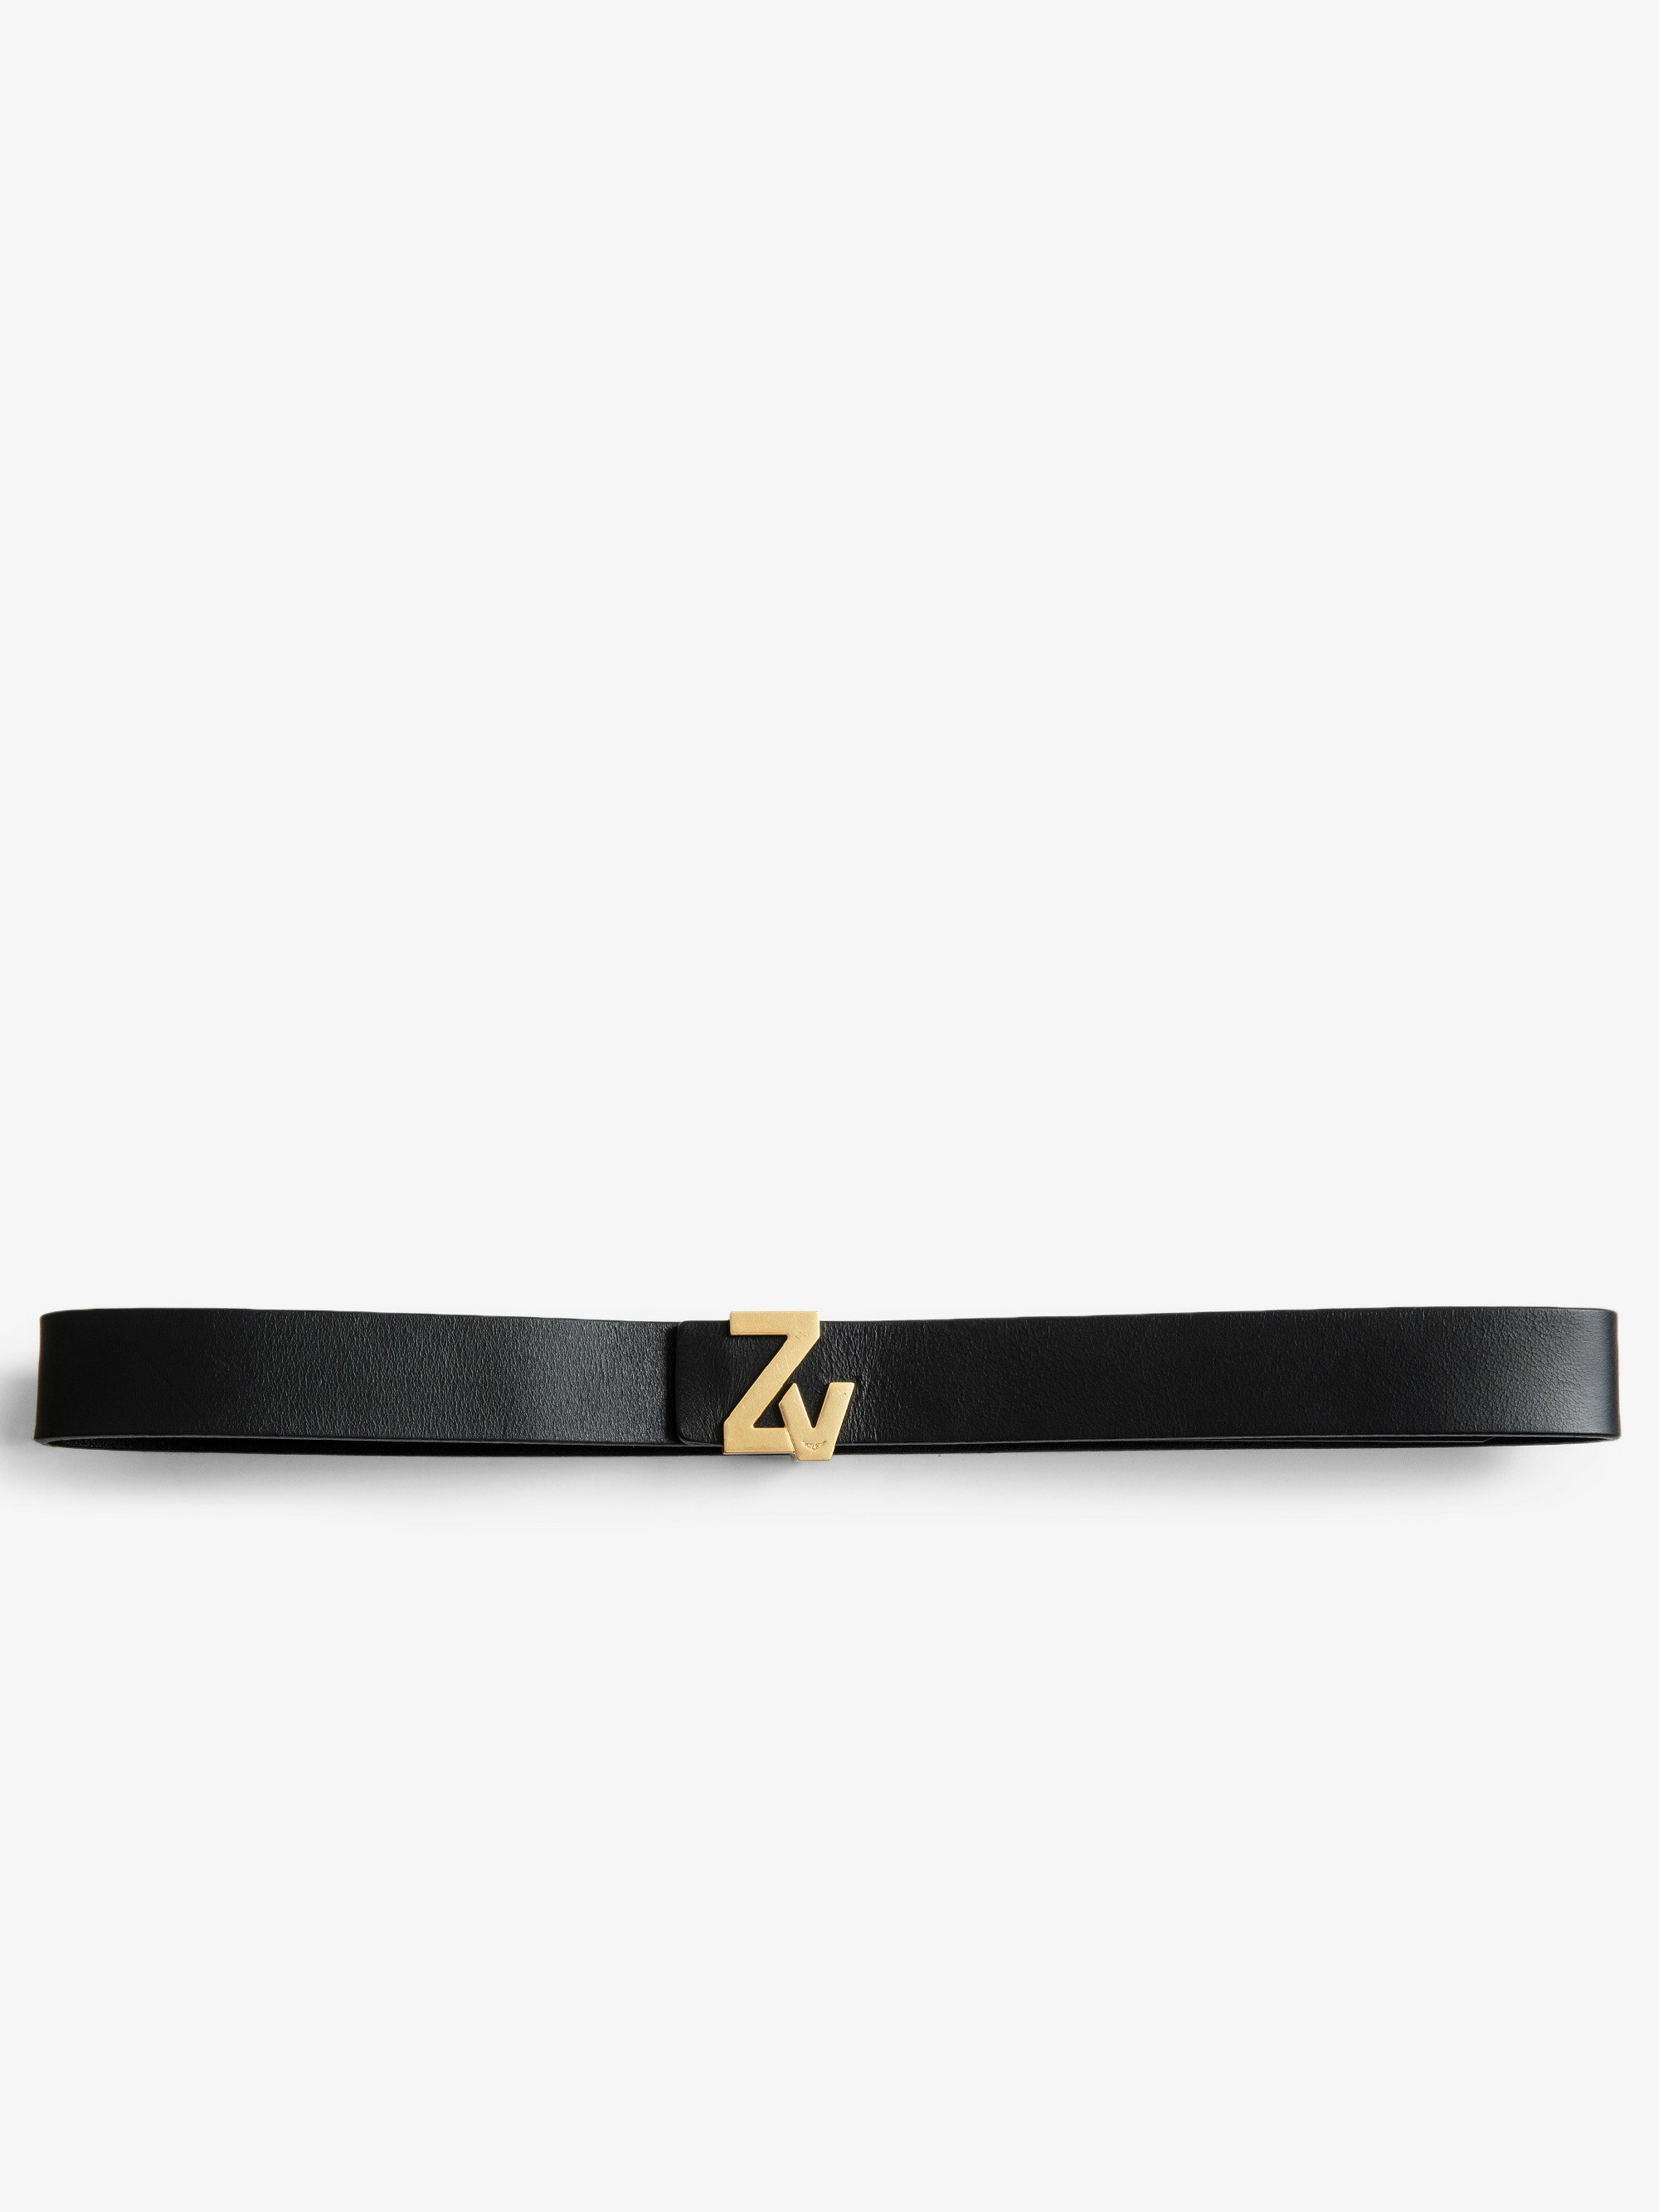 La Mini Belt ZV Initiale Belt - Women’s ZV Initiale black leather belt